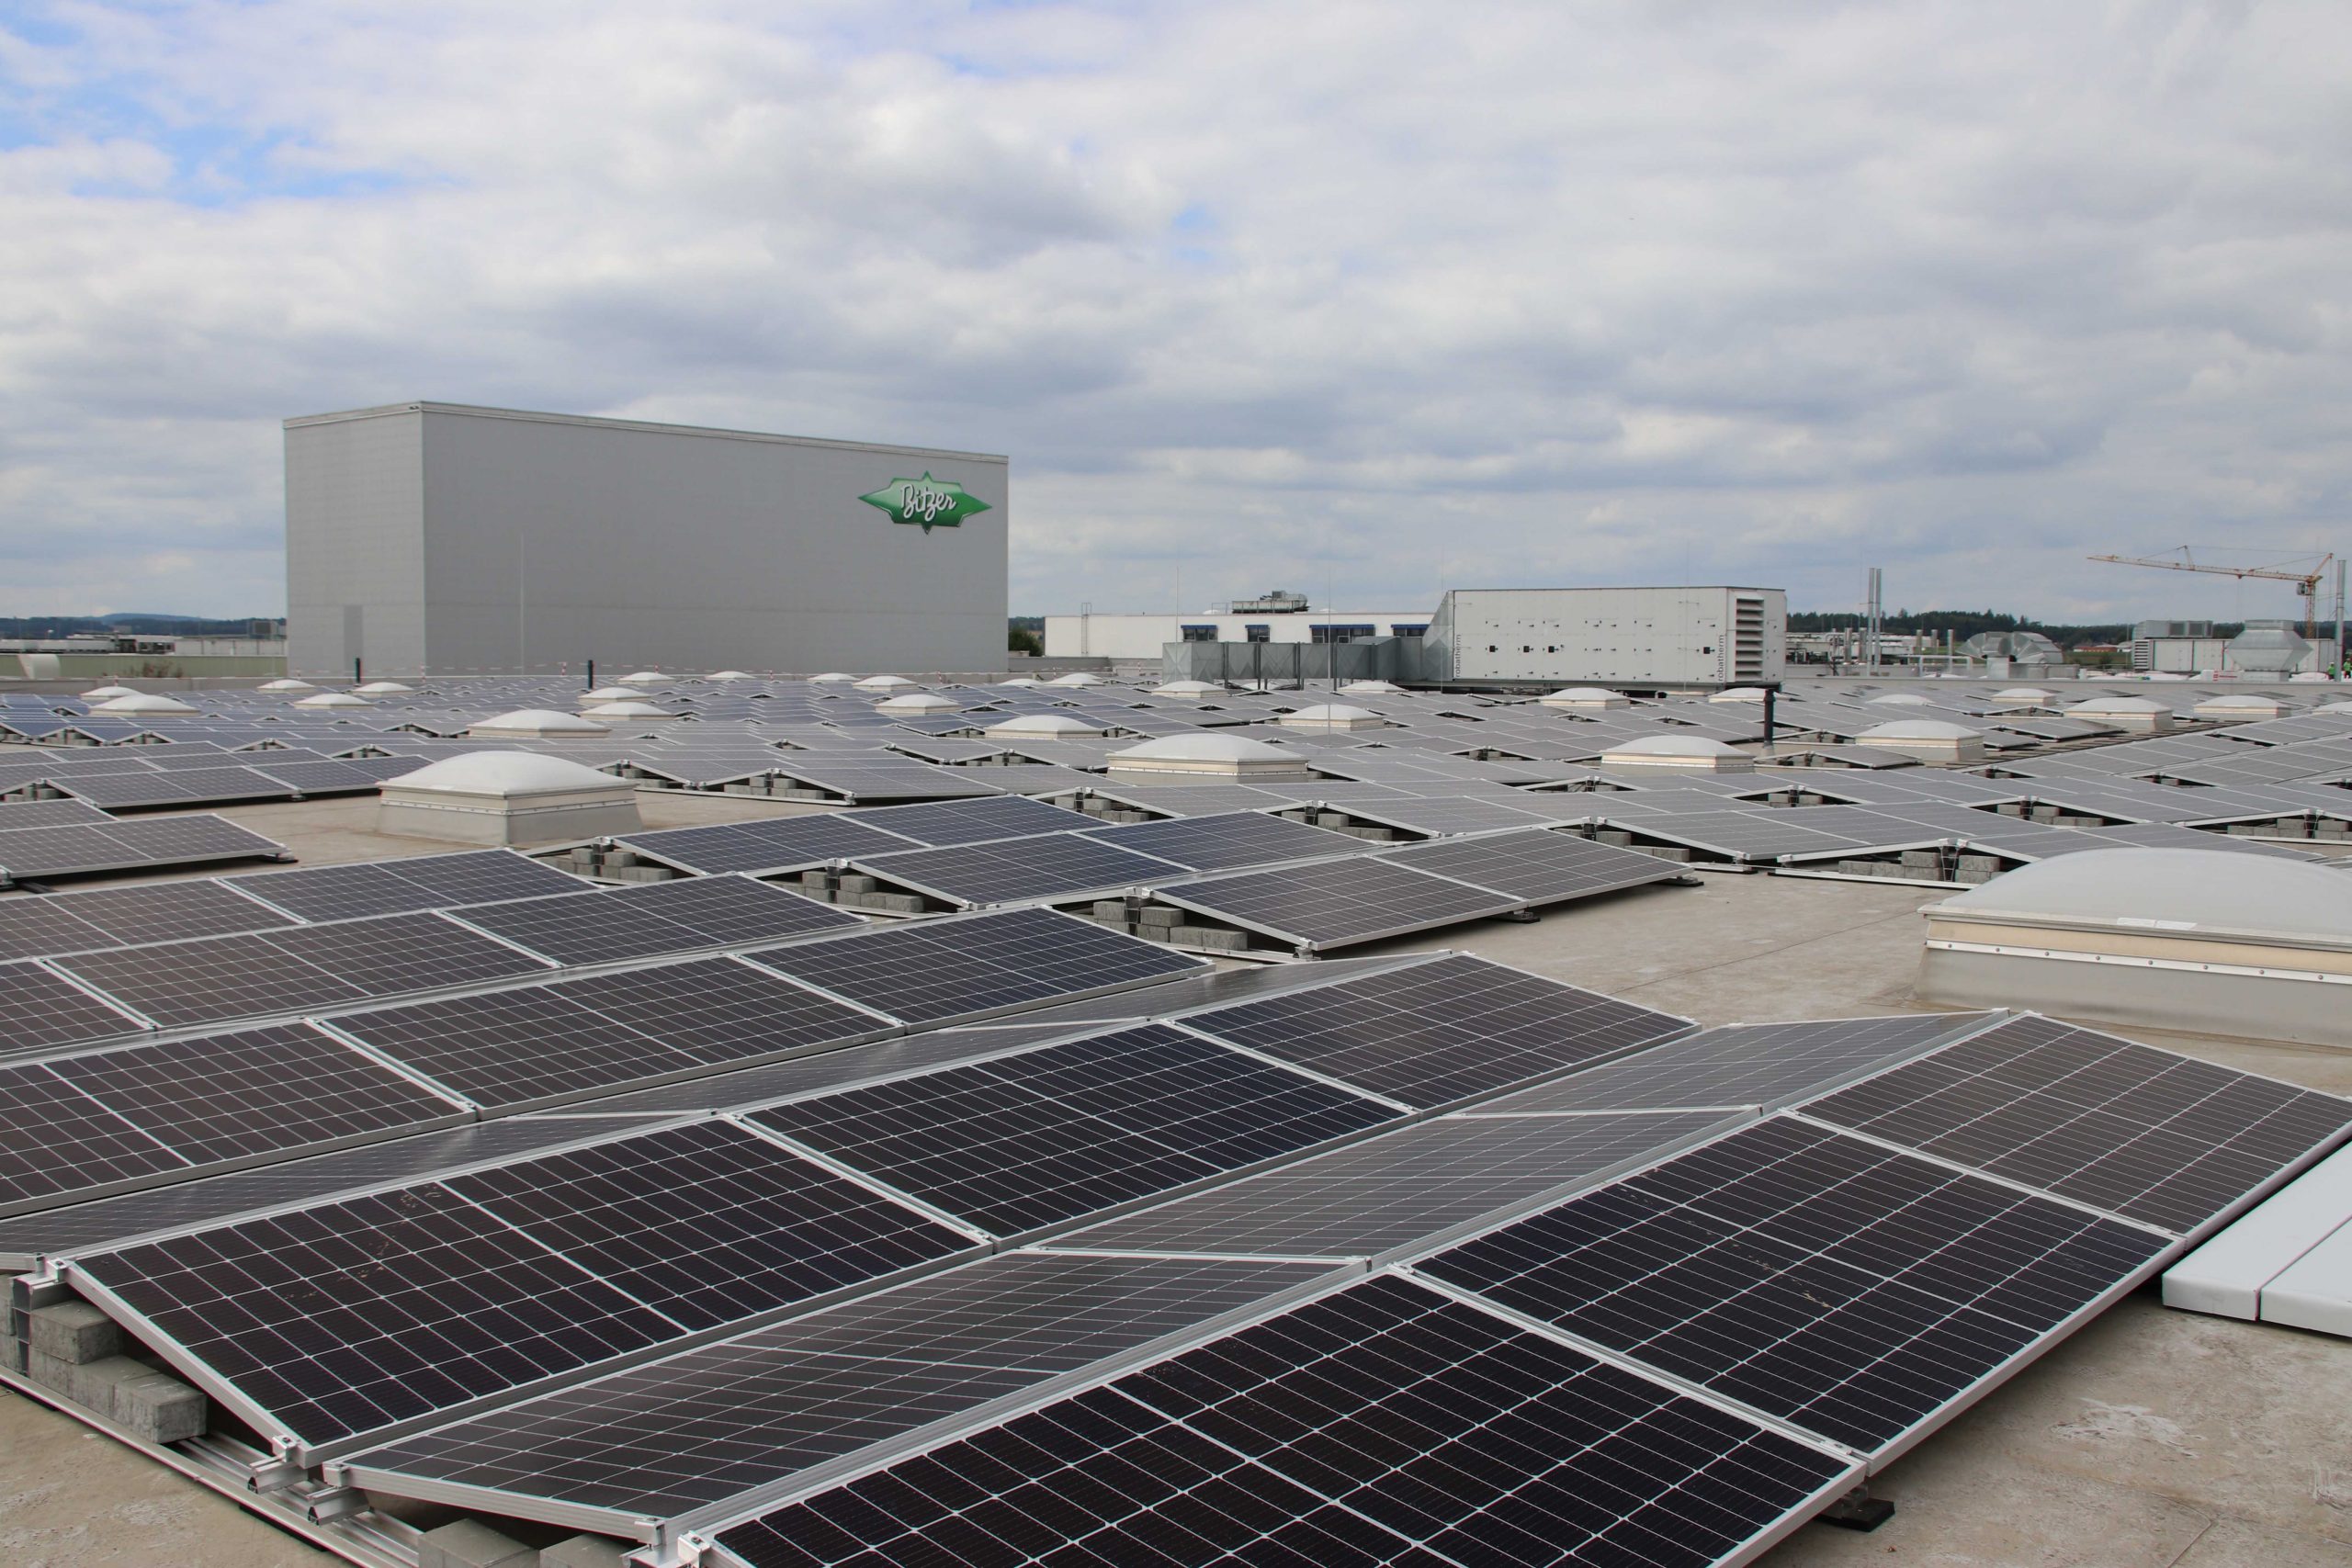 可持续发展是当今求职者关注的一个话题。在比泽尔罗滕堡-艾根兹宁根工厂，太阳能板的发电量能满足工厂自身 60% 以上的用电需求